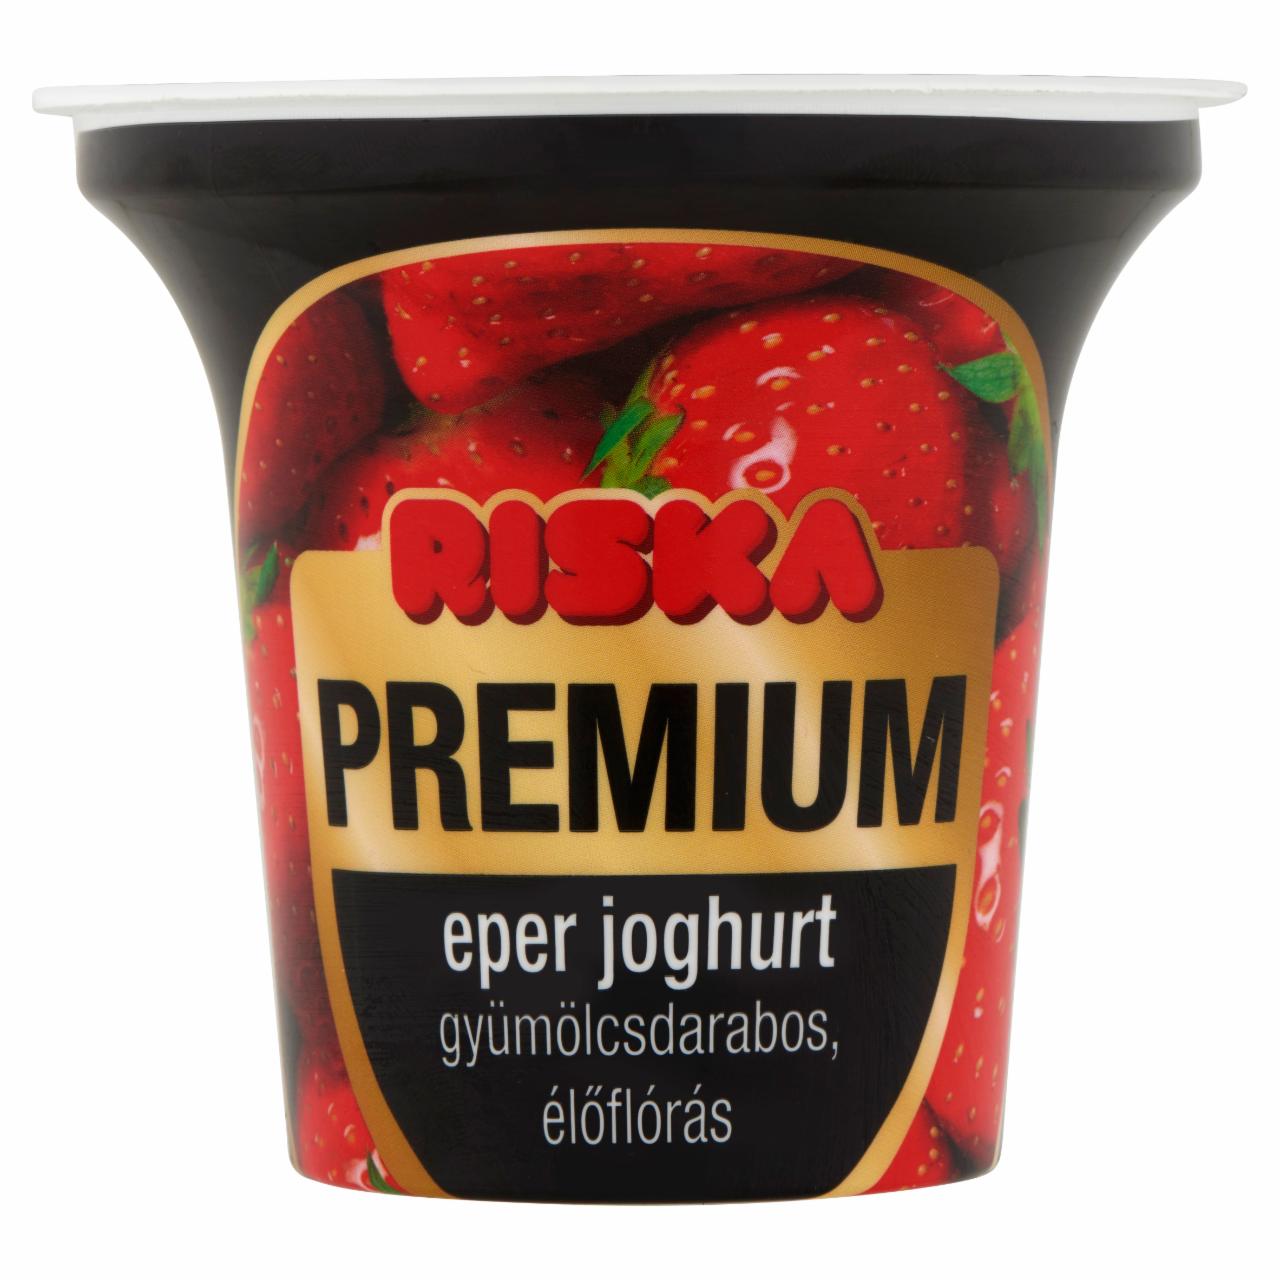 Képek - Riska Premium gyümölcsdarabos, élőflórás eper joghurt 200 g